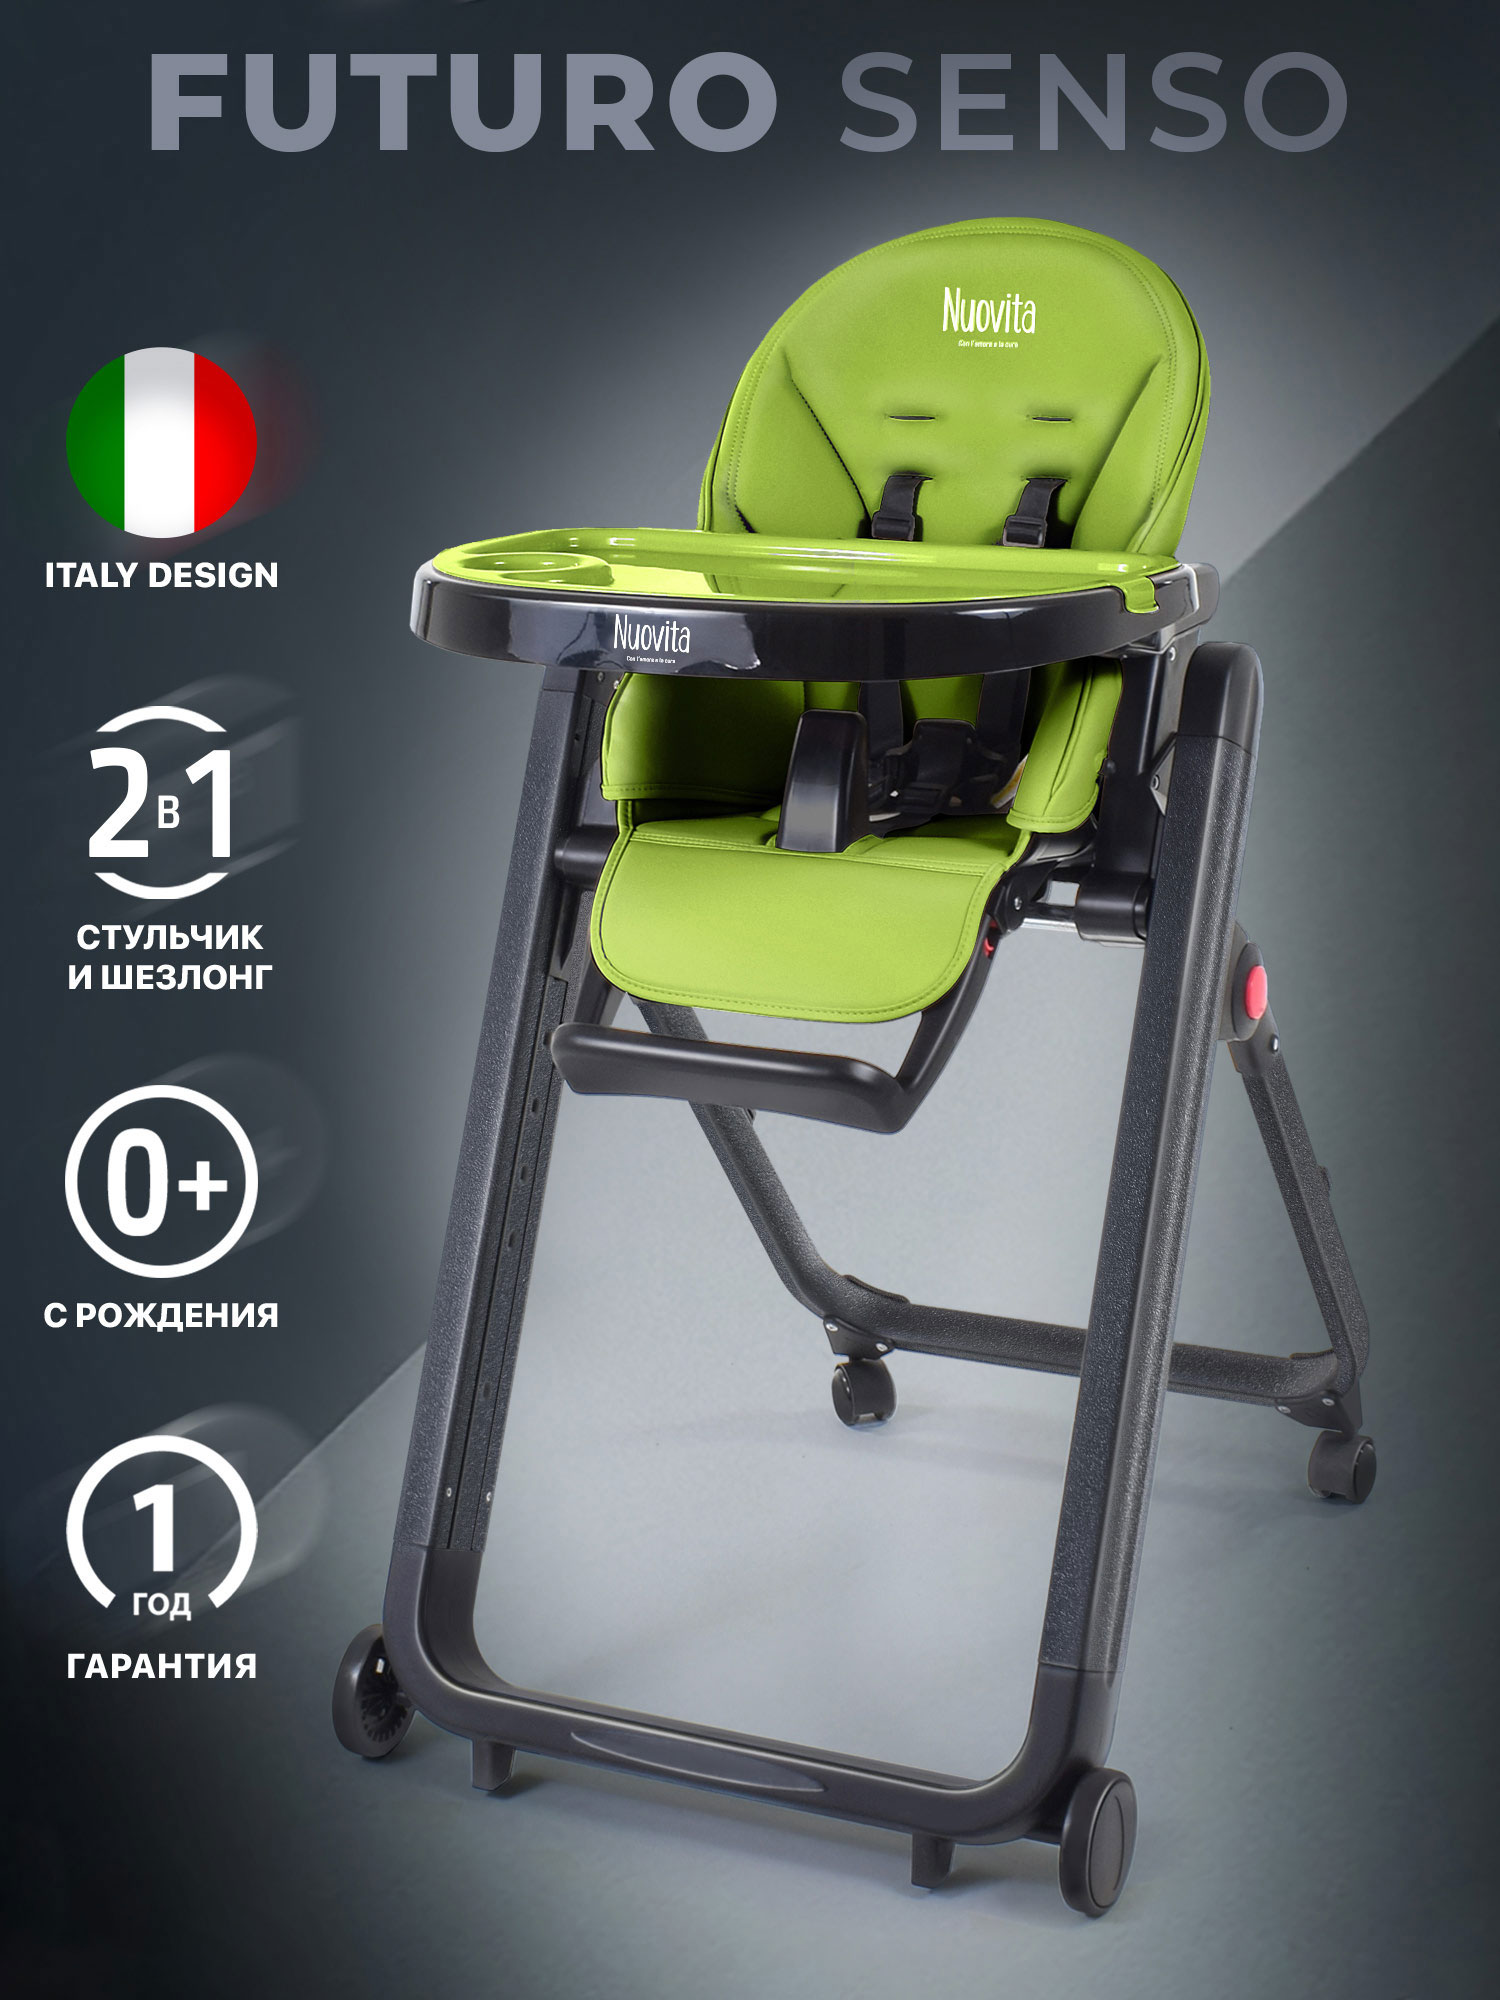 Стульчик для кормления Nuovita Futuro Senso Nero (Verde/Зеленый) стульчик для кормления nuovita futuro senso nero marino морской